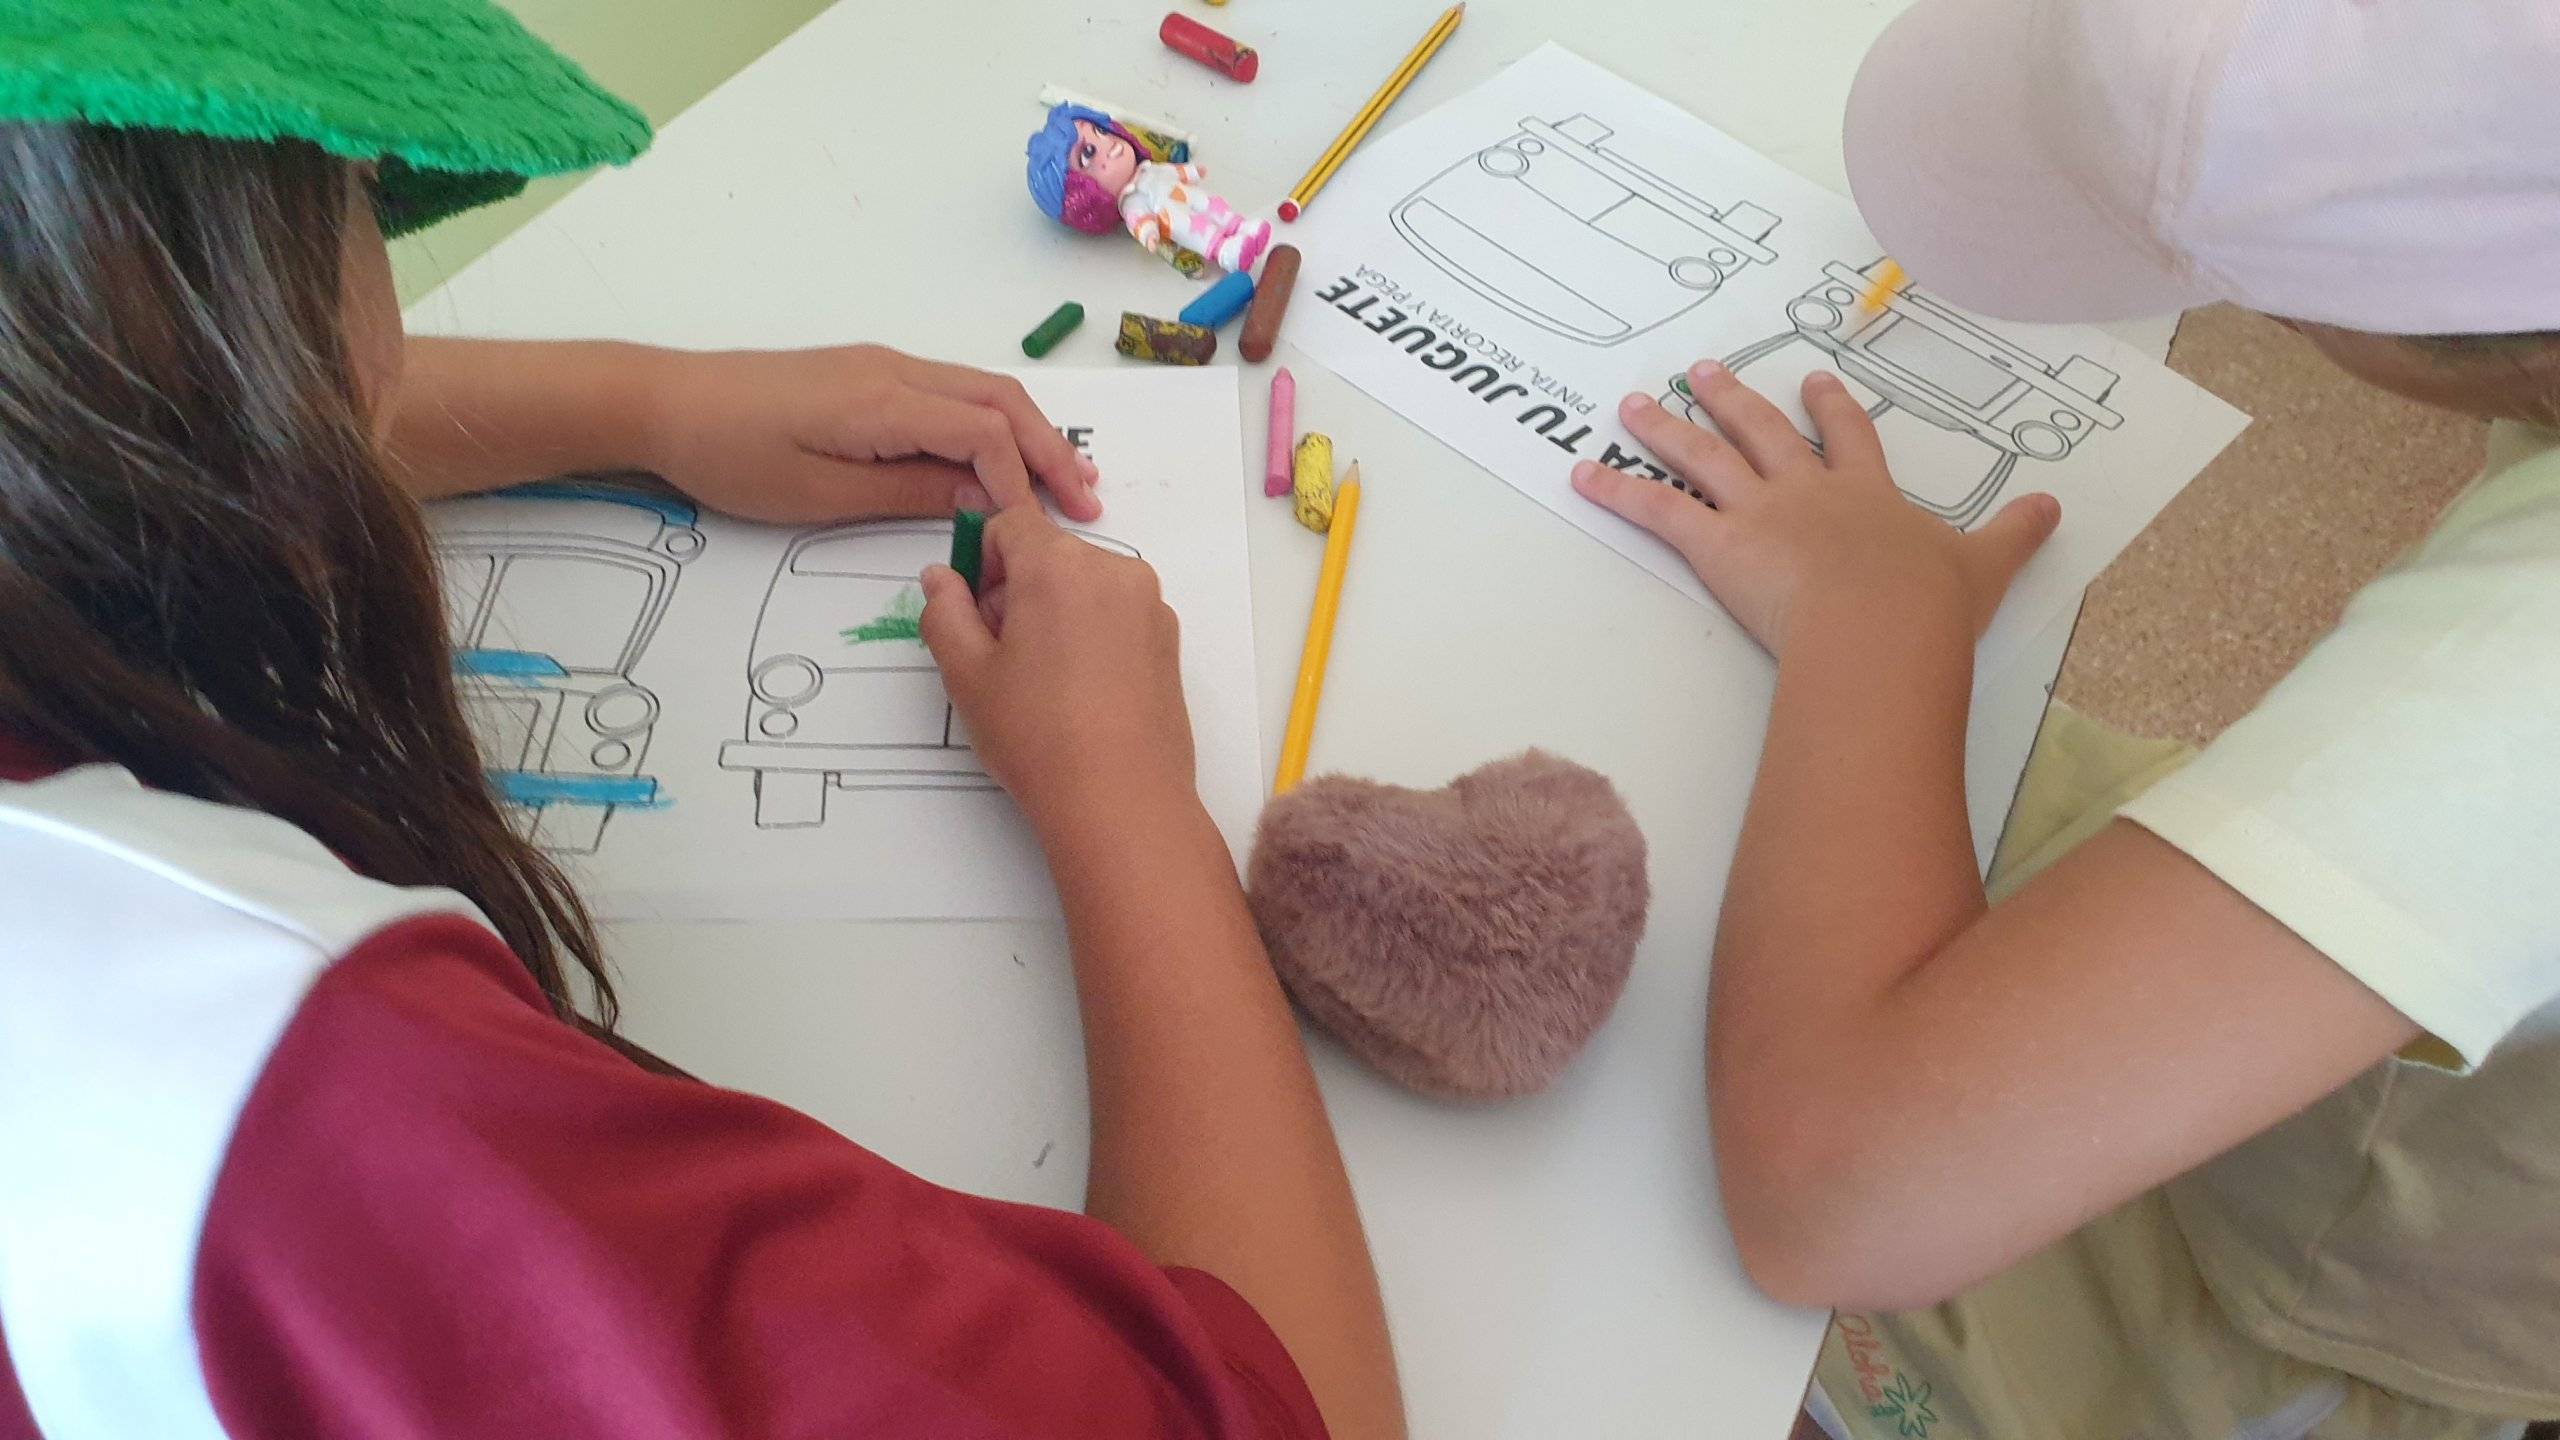 Dos niños participantes en el Minicampus dibujando.